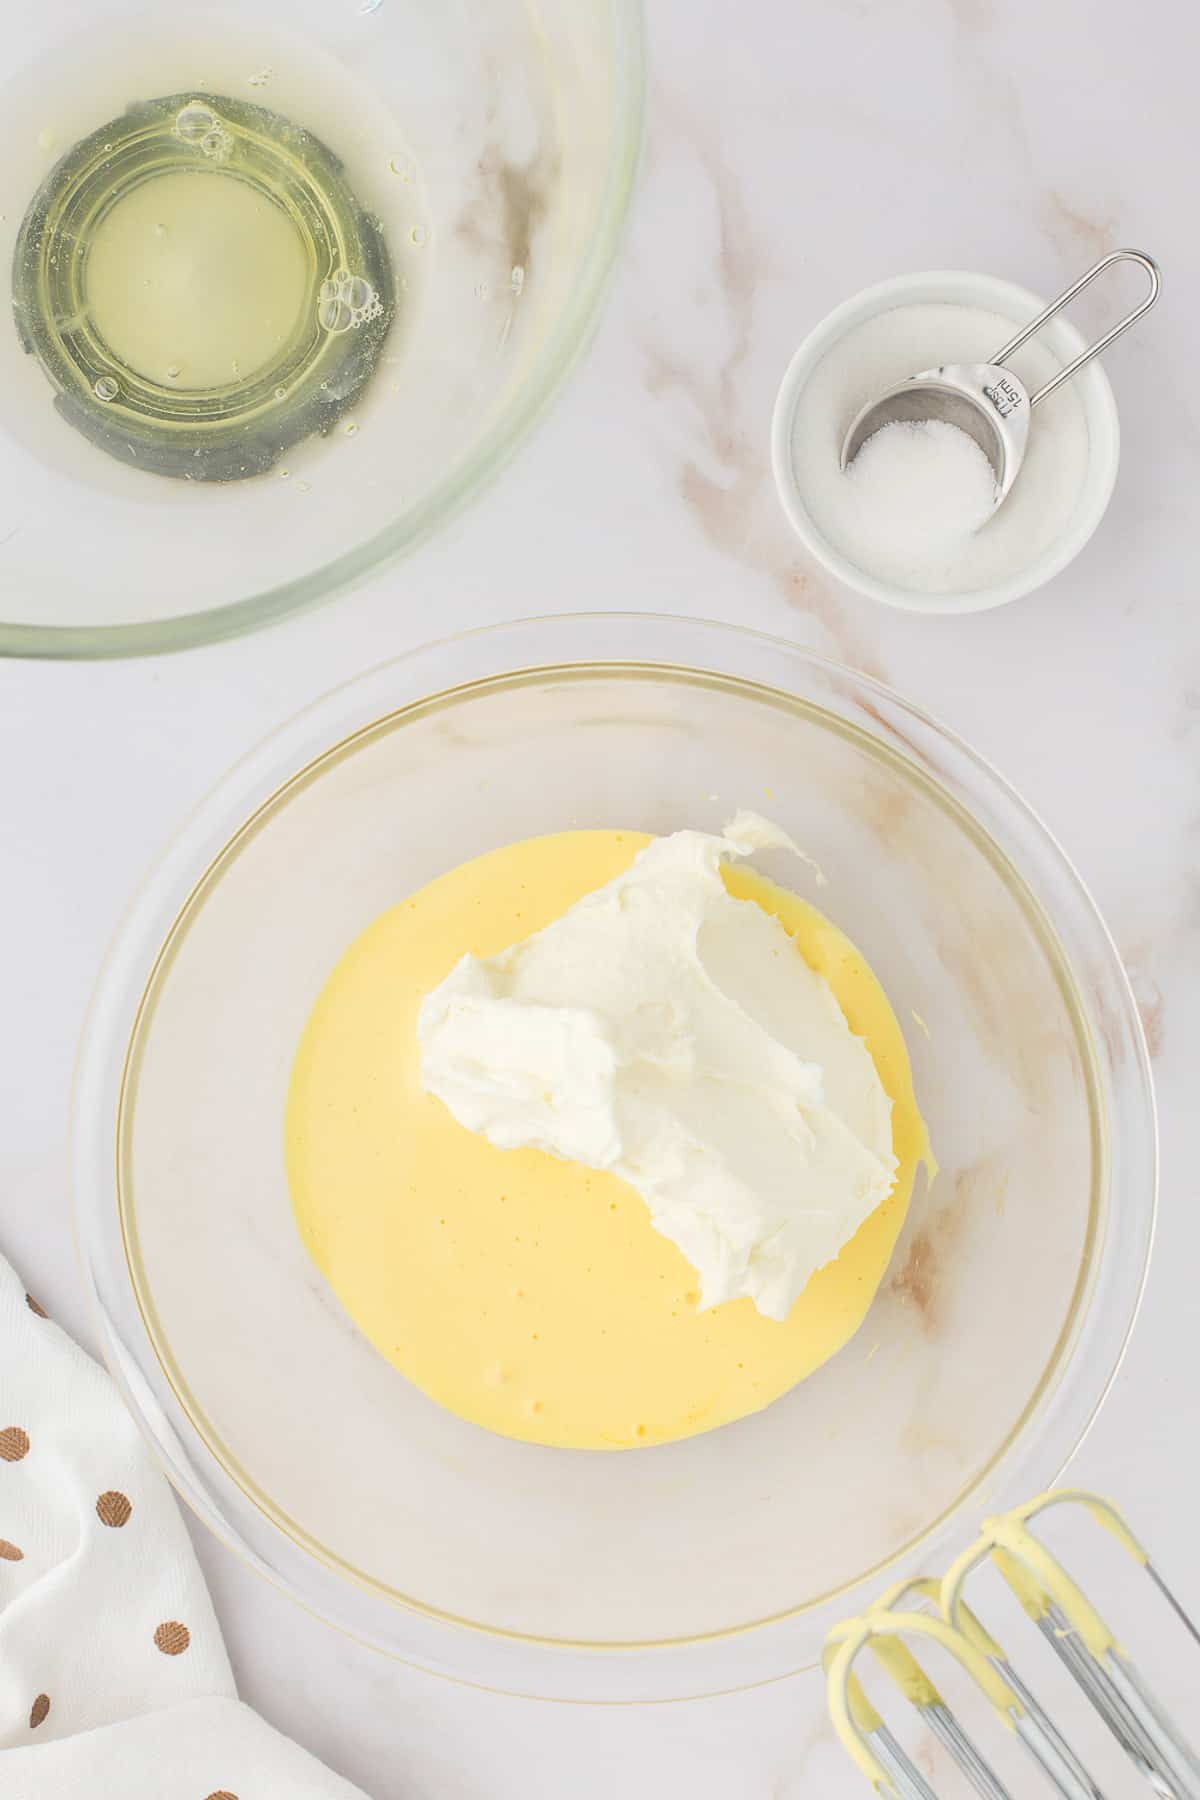 Adding whipped egg whites to creamed yolks.